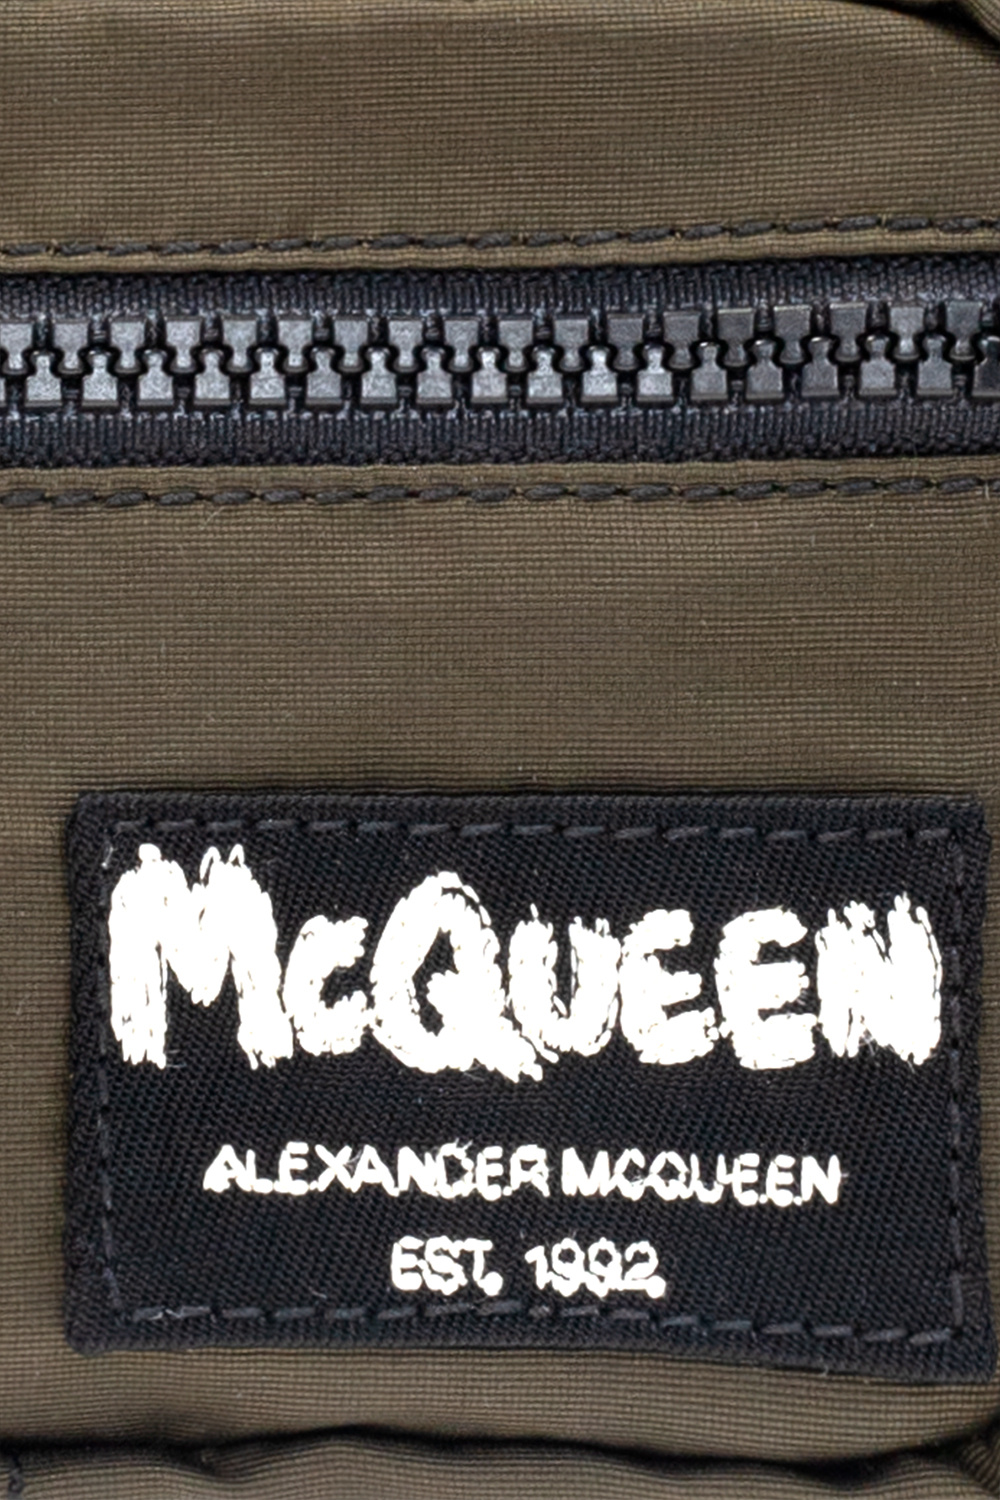 Alexander McQueen alexander mcqueen double breasted wool blend coat